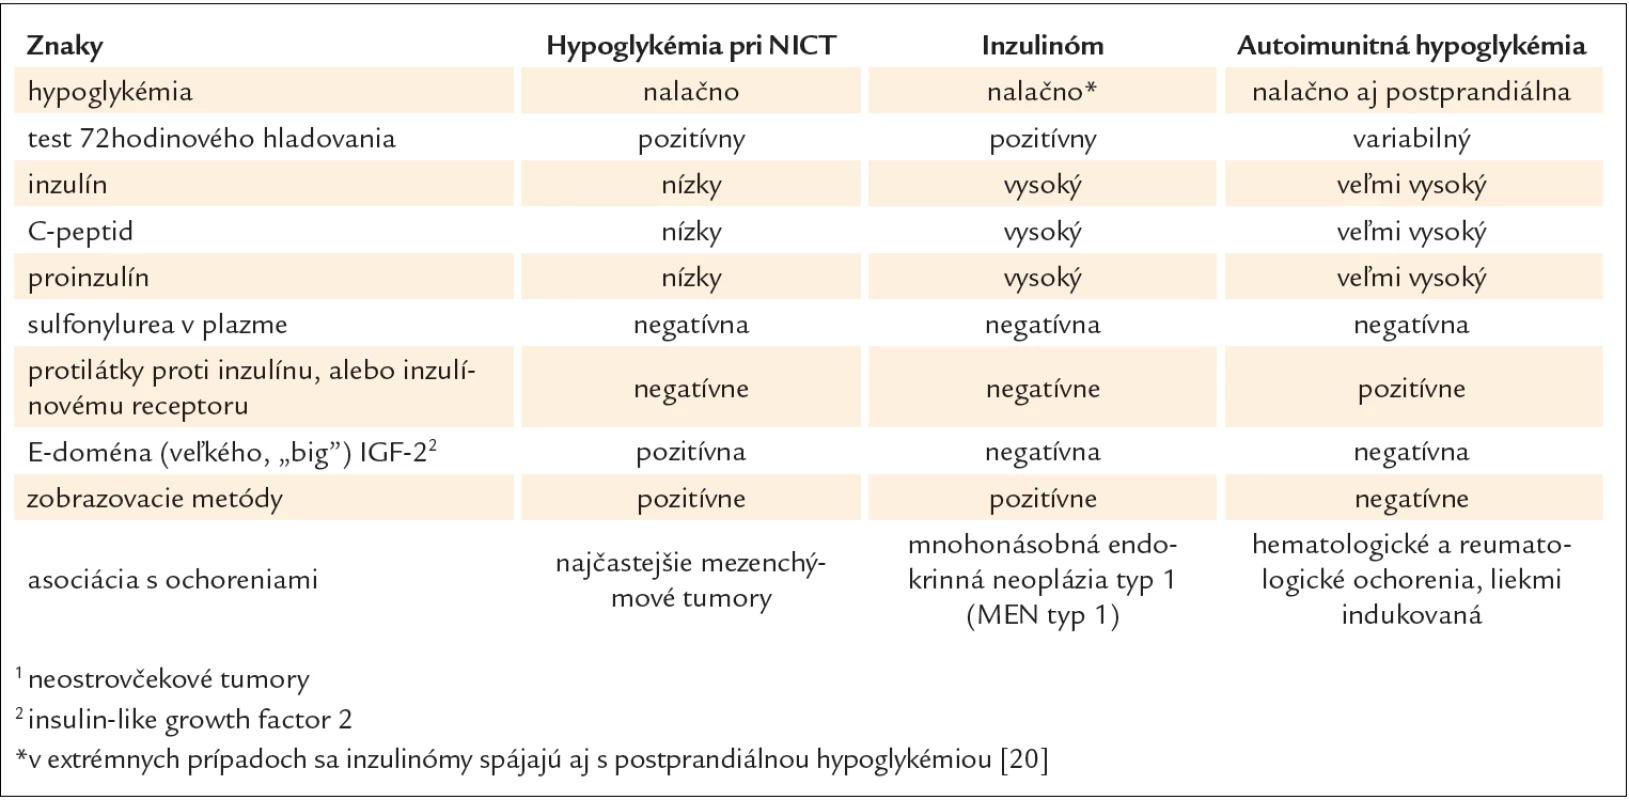 Klinická a biochemická charakteristika pacientov s hypoglykémiou pri NICT&lt;sup&gt;1&lt;/sup&gt;, inzulinóme a autoimunitnej hypoglykémii.